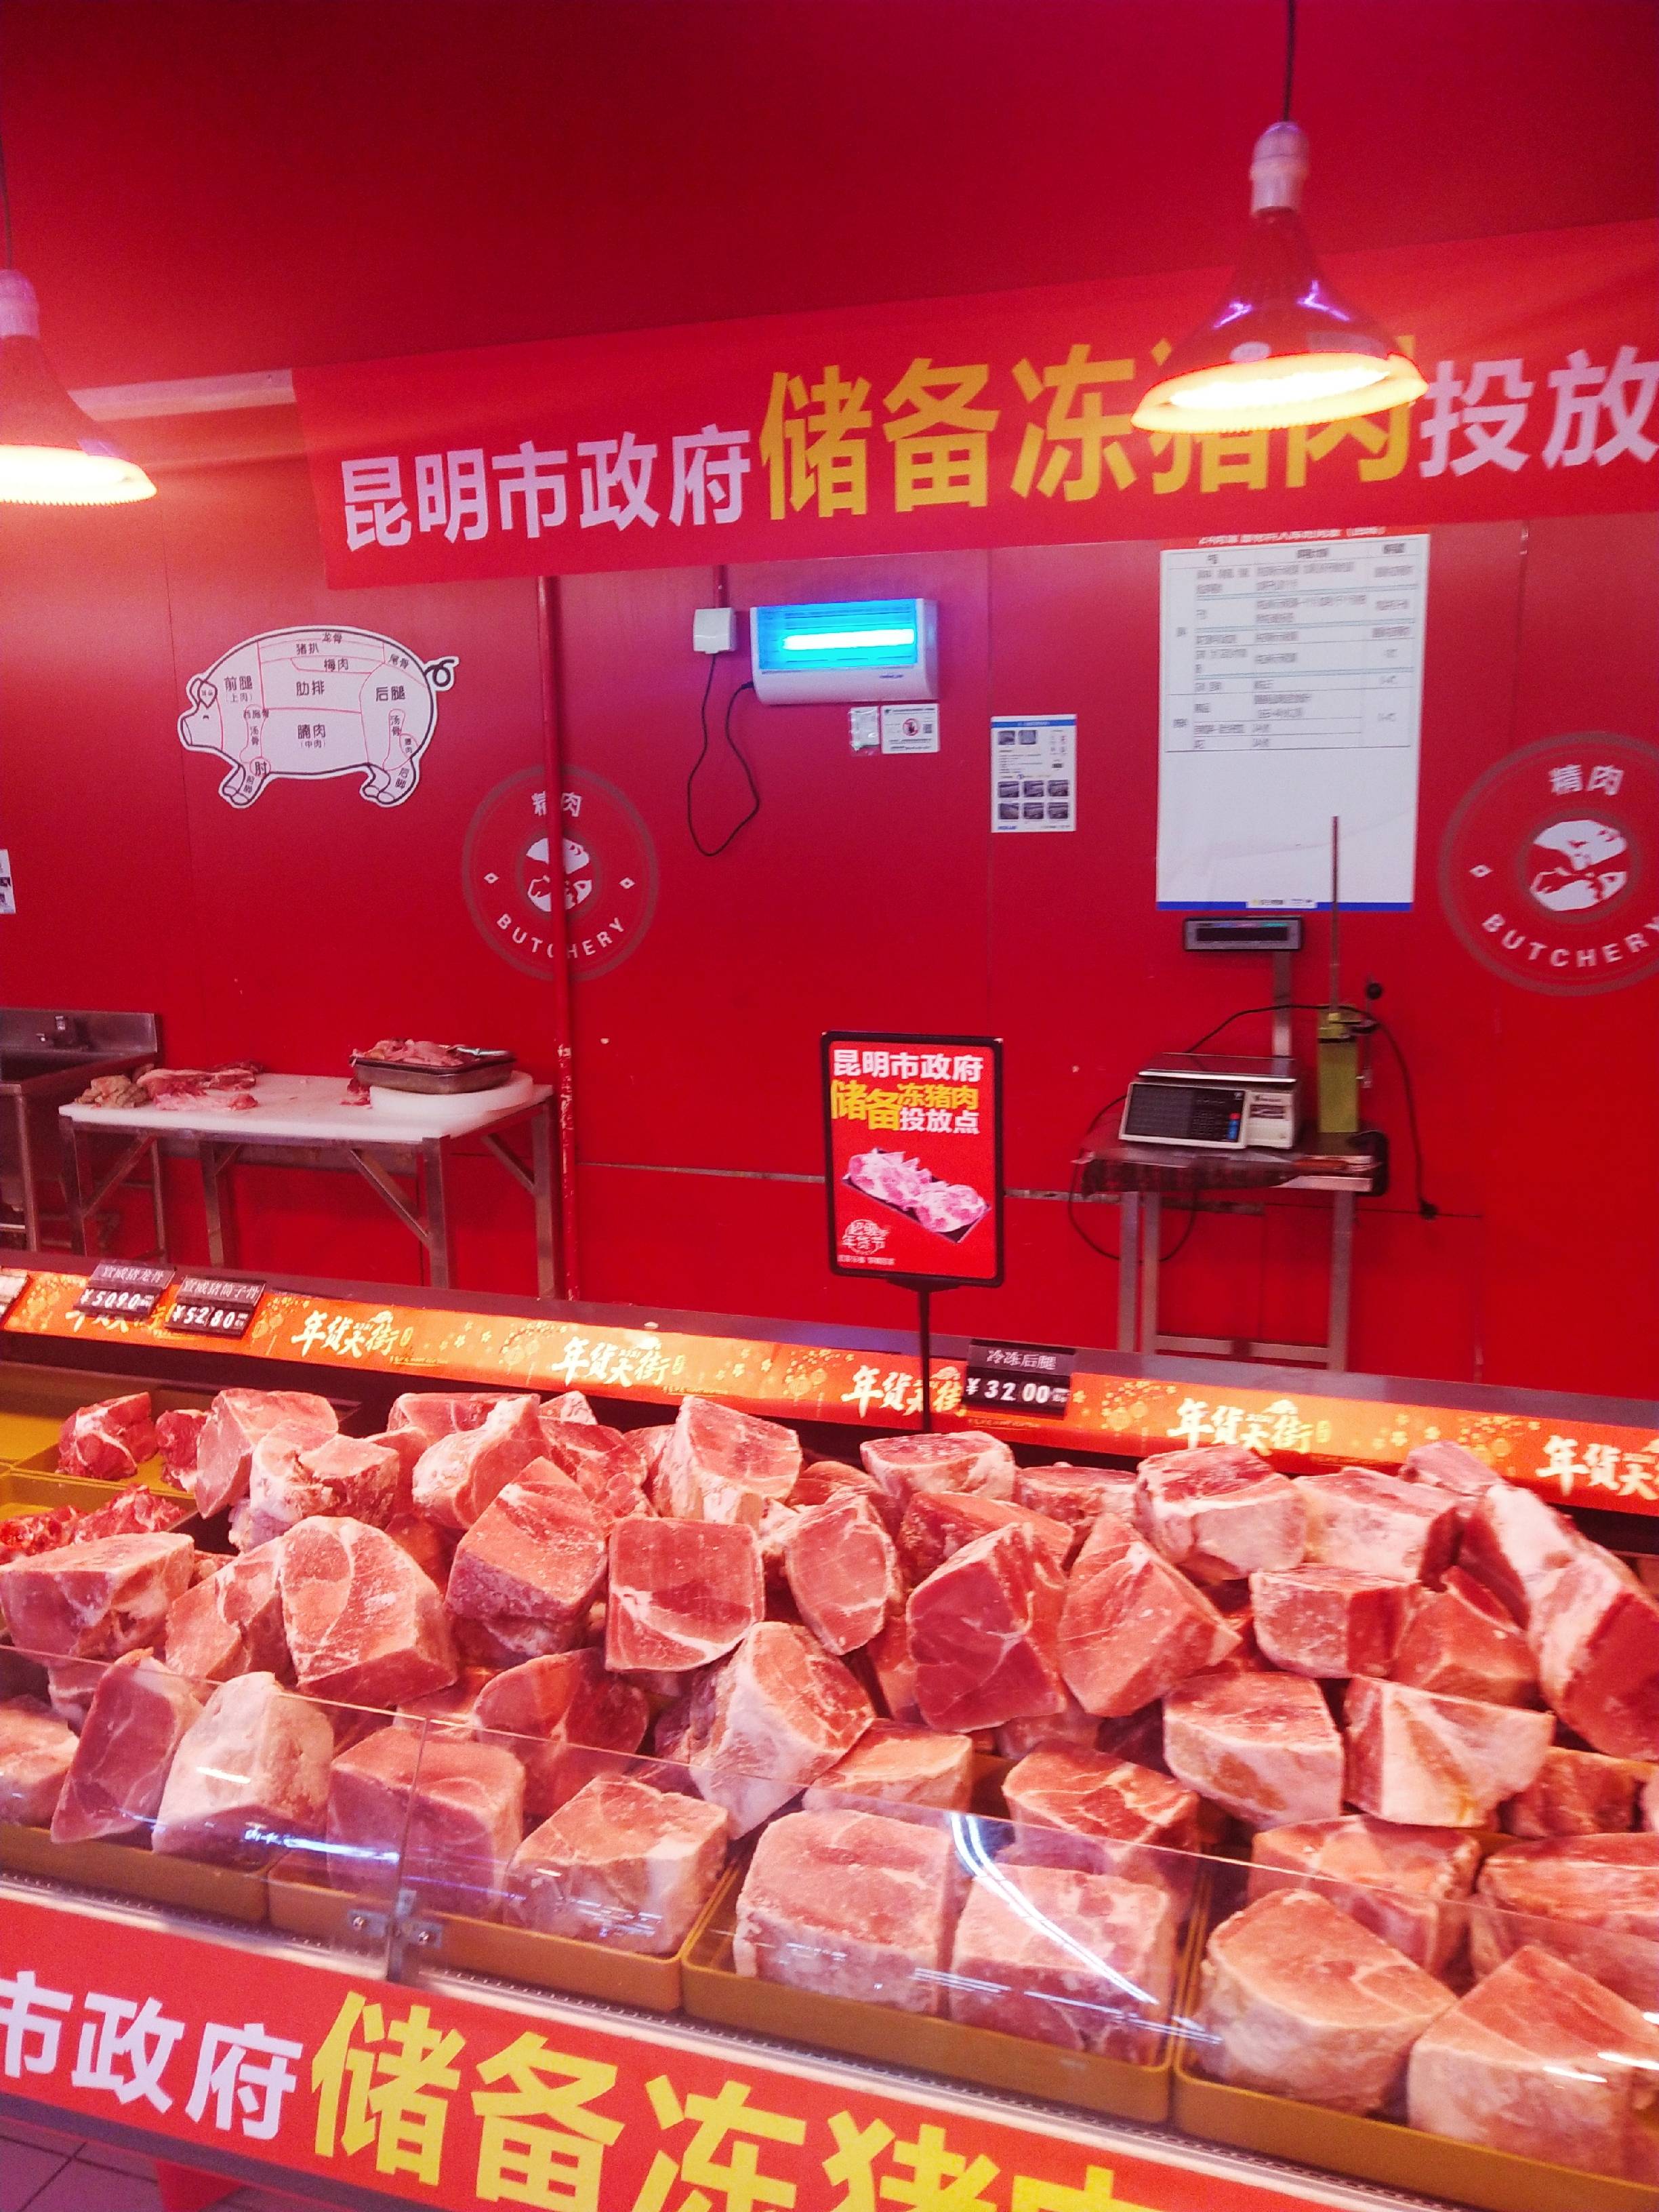 昆明市政府投放储备冻猪肉,家乐福10个门店开售